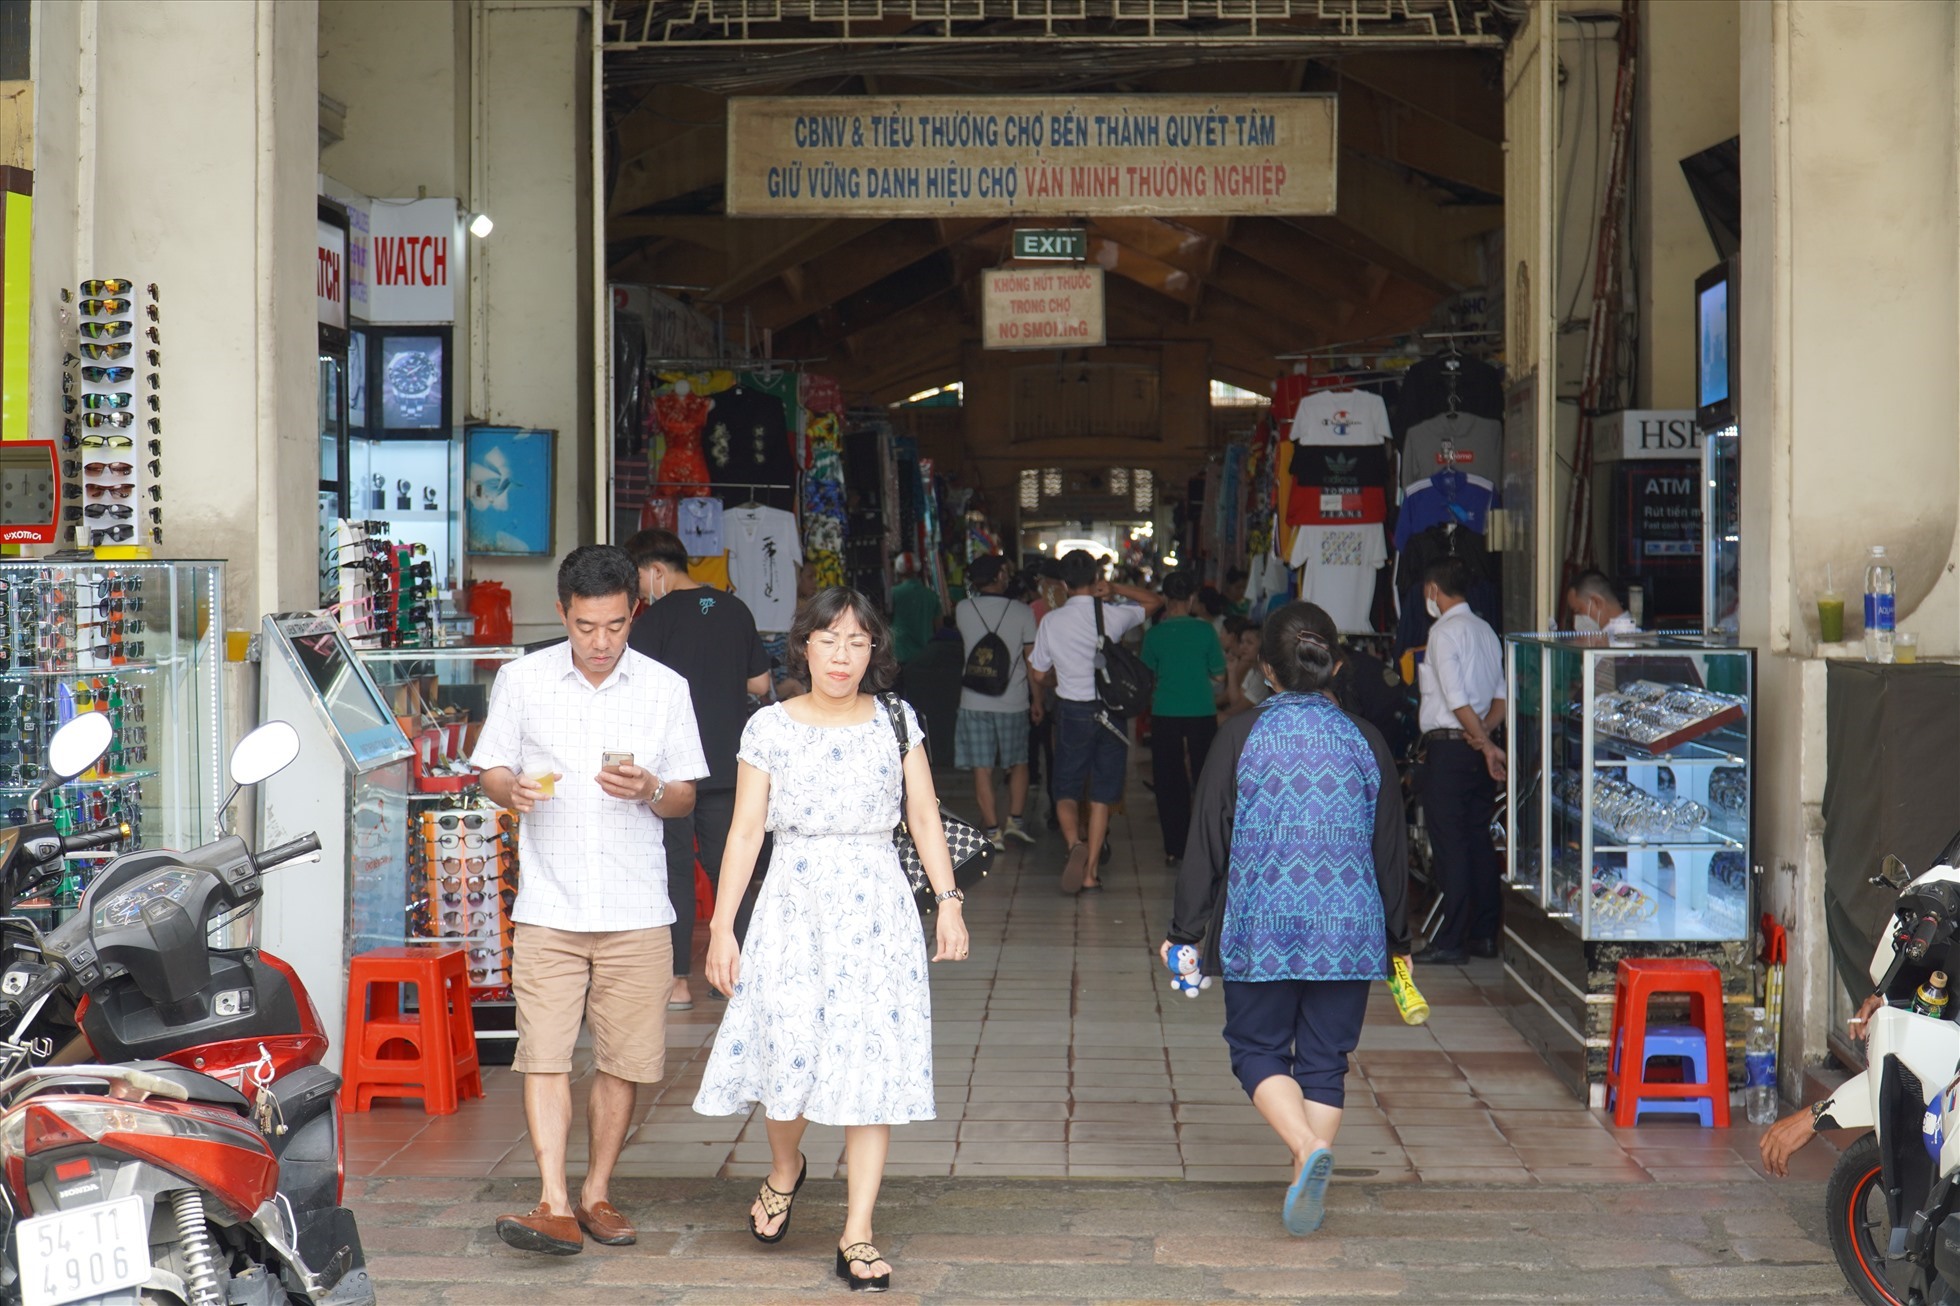 Chợ Bến Thành (Quận 1) là một trong những điểm đến du lịch hấp dẫn du khách trong và ngoài nước.